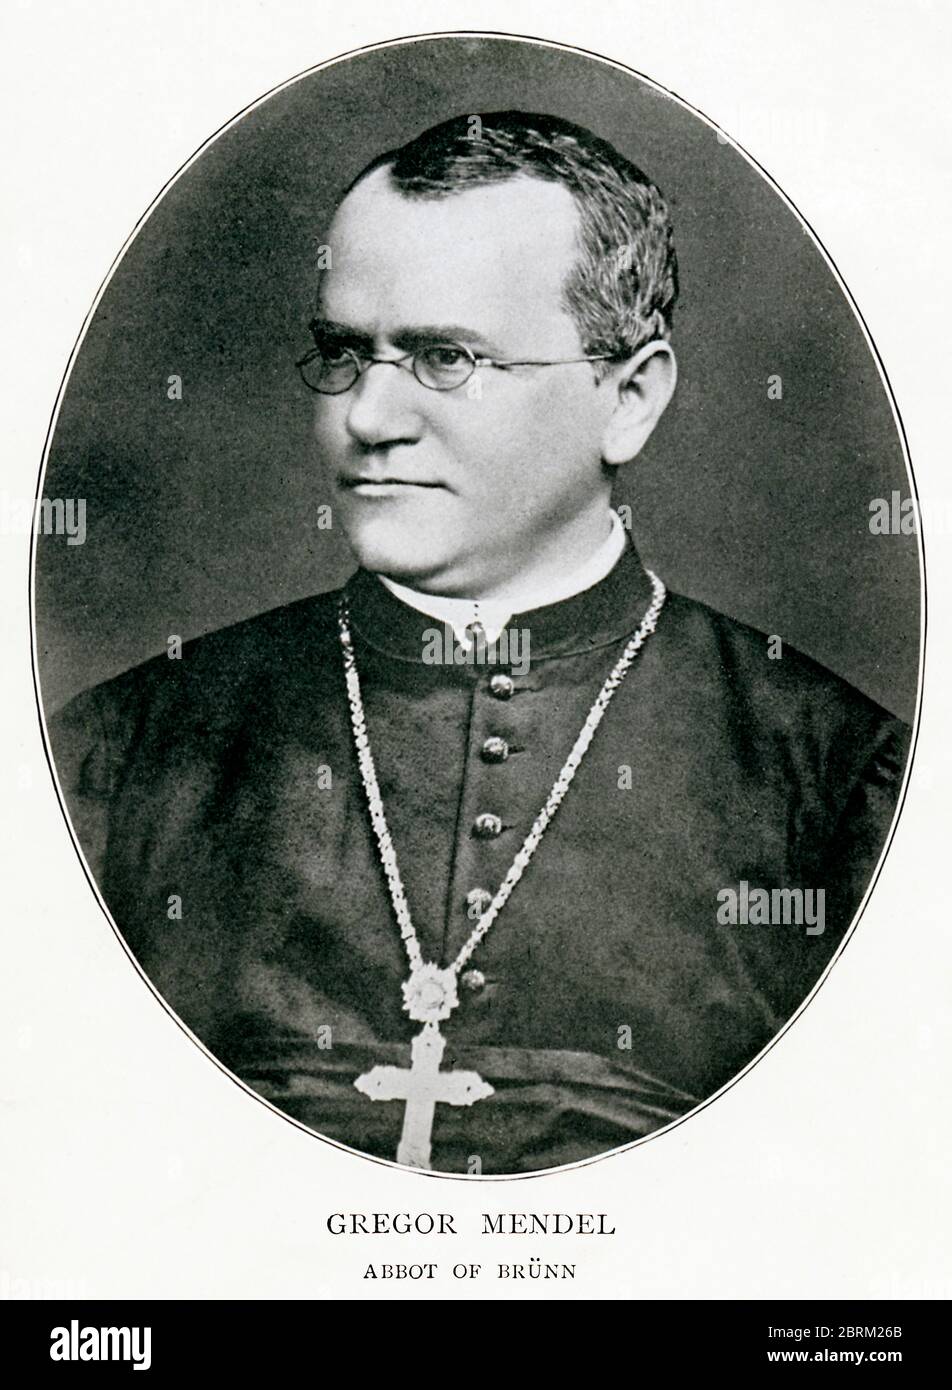 Gregor Mendel, retrato del científico checo en c.1855, fraile agustino, abad de Brünn y fundador de la ciencia moderna de la genética para su trabajo en plantas Foto de stock